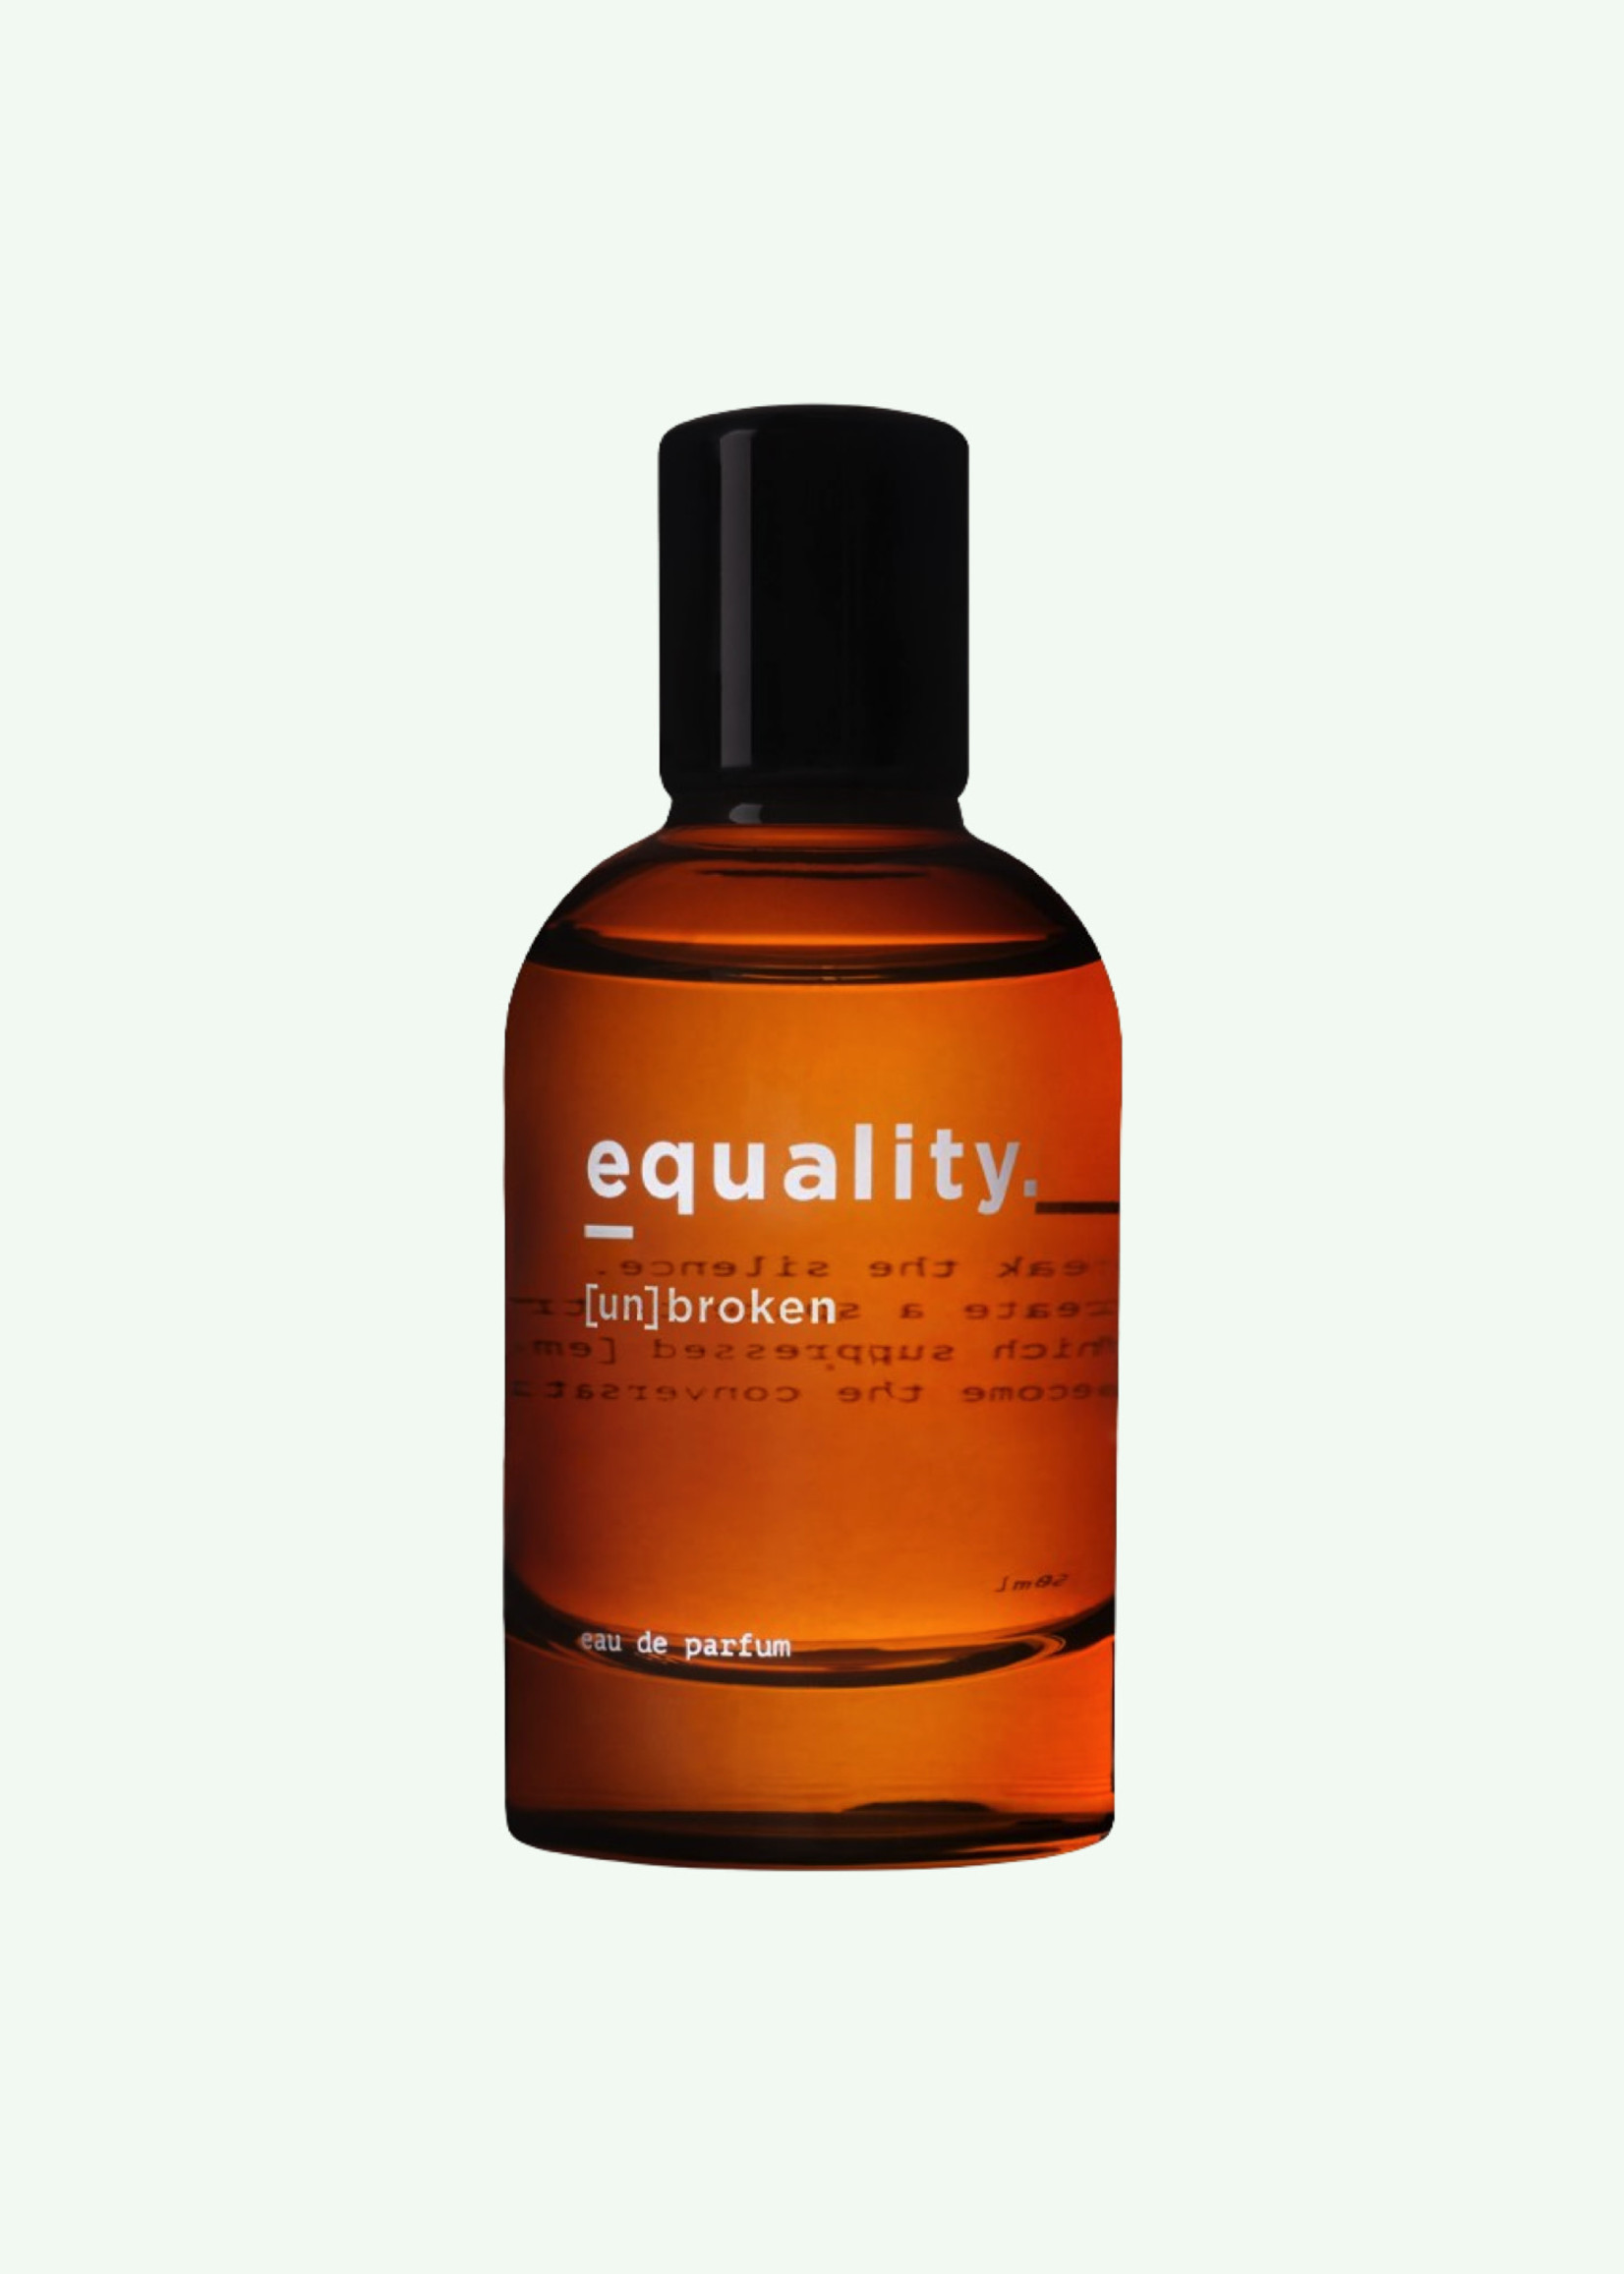 equality. equality. - [un]broken - Eau de Parfum